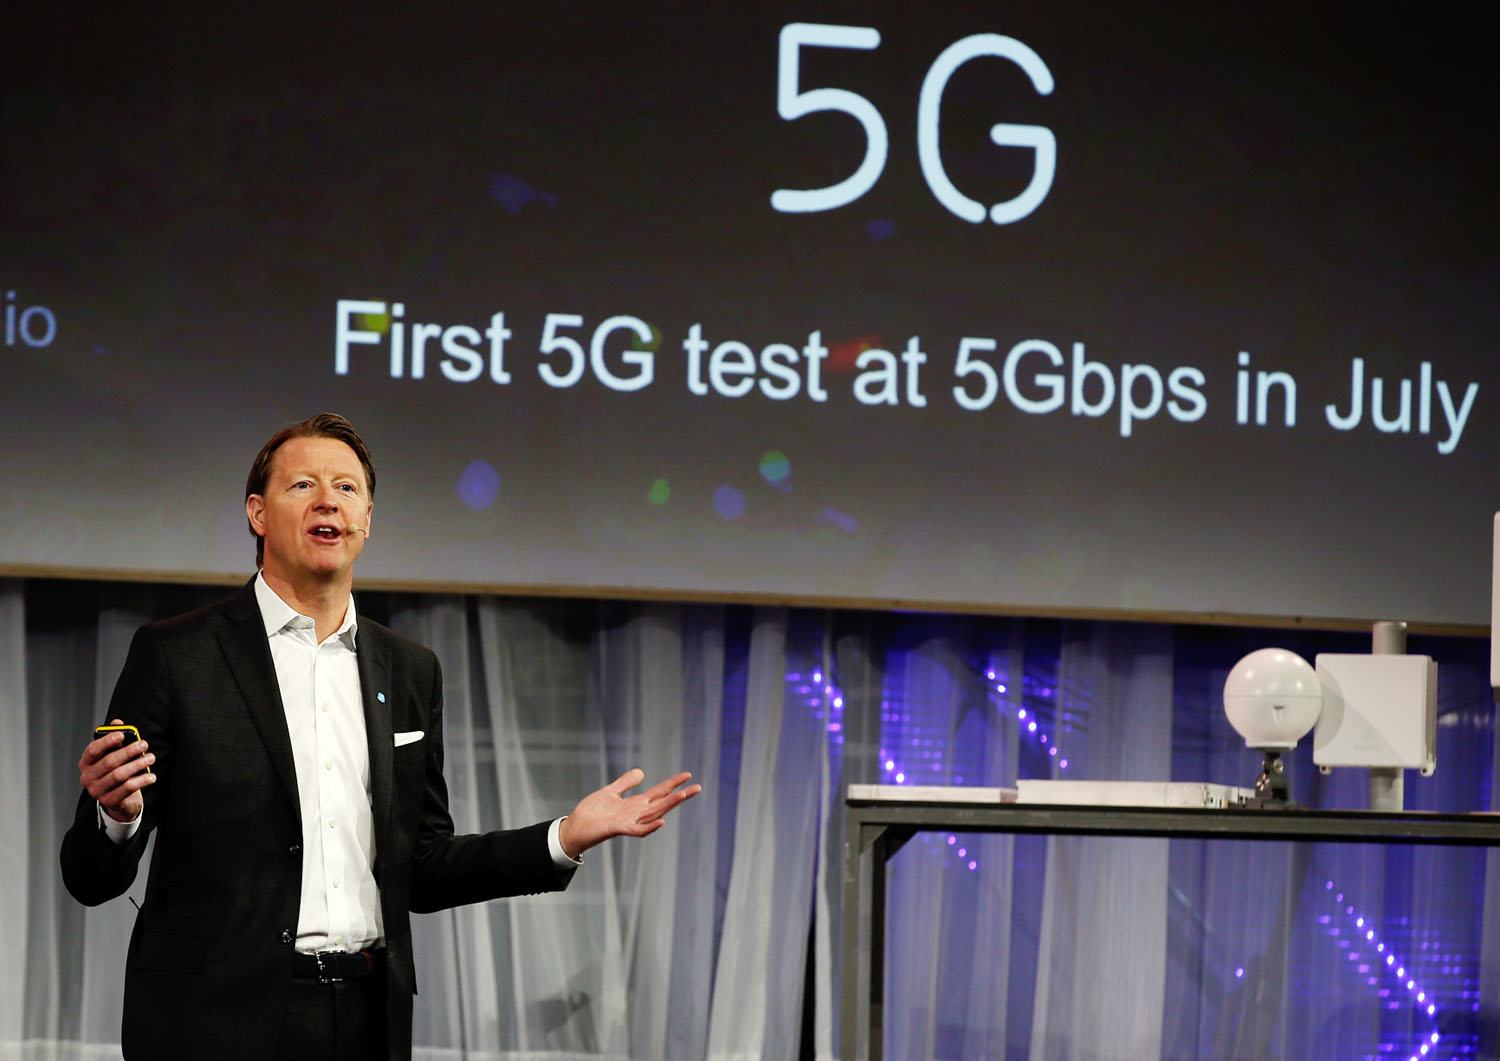 Hans Vestberg, az Ericsson főnöke az 5G-ről beszél, a jobb oldali képen a Huawei okosórája látható